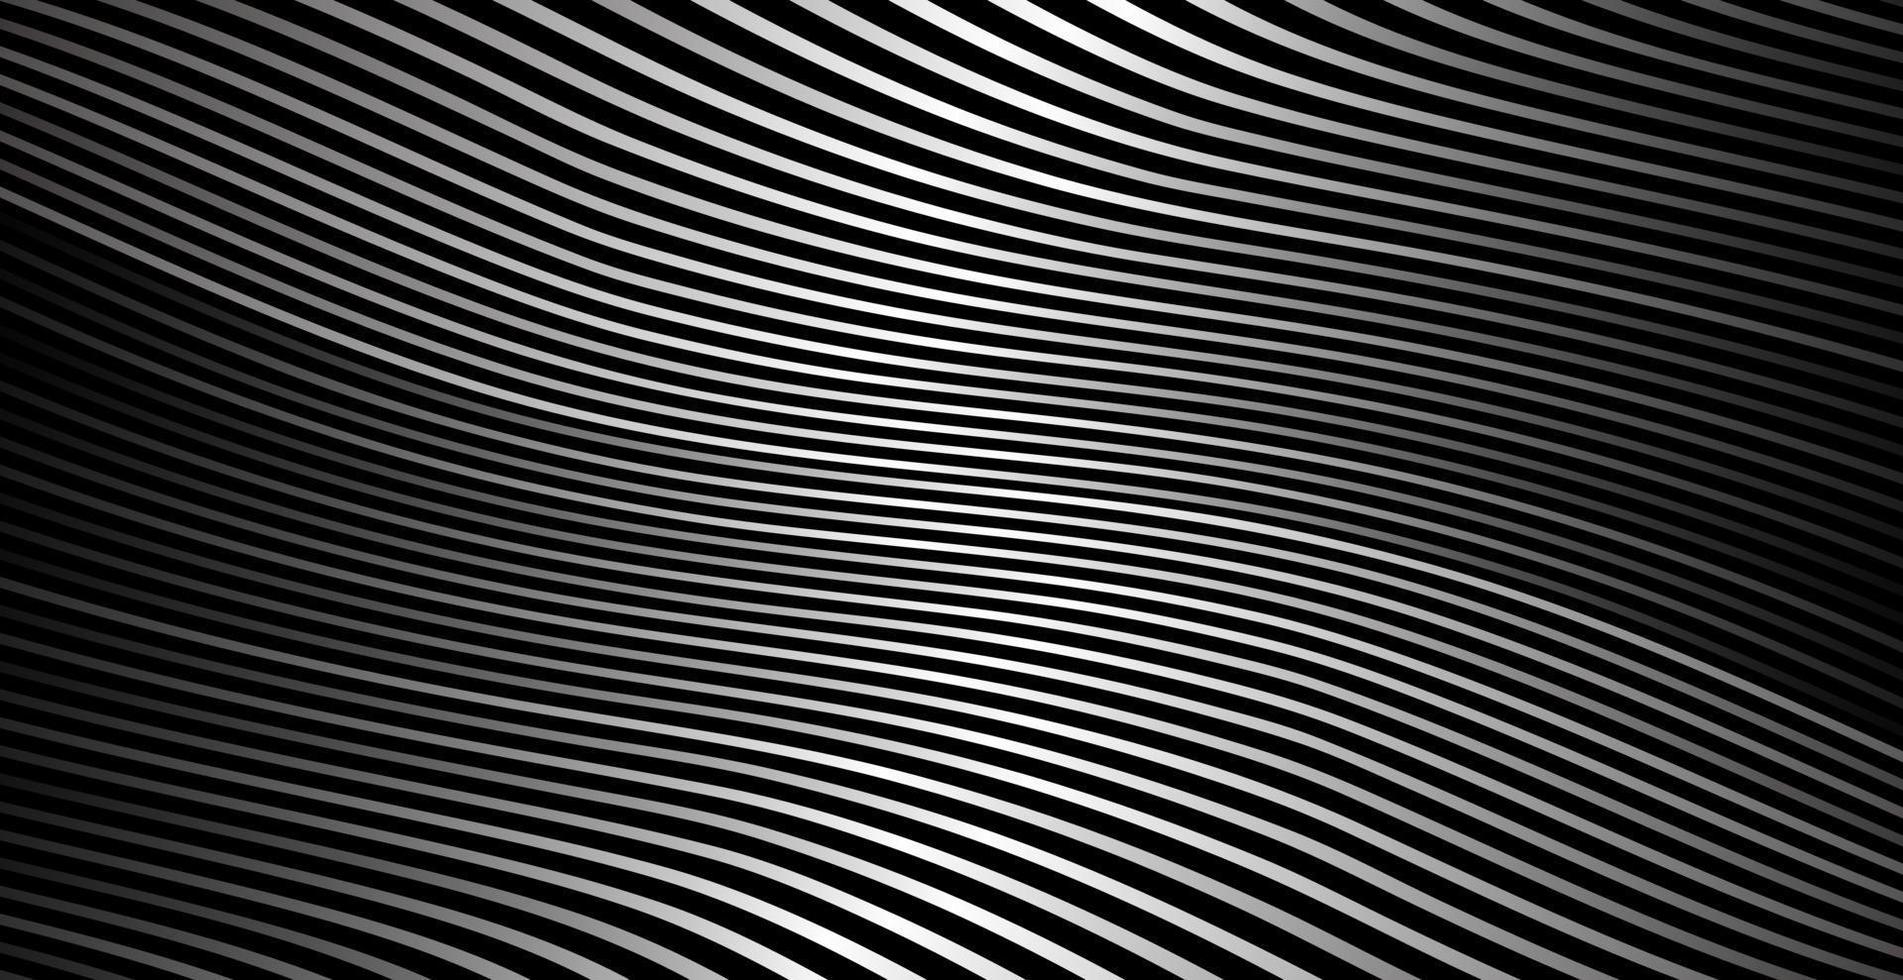 abstracte kromgetrokken diagonale gestreepte achtergrond vector